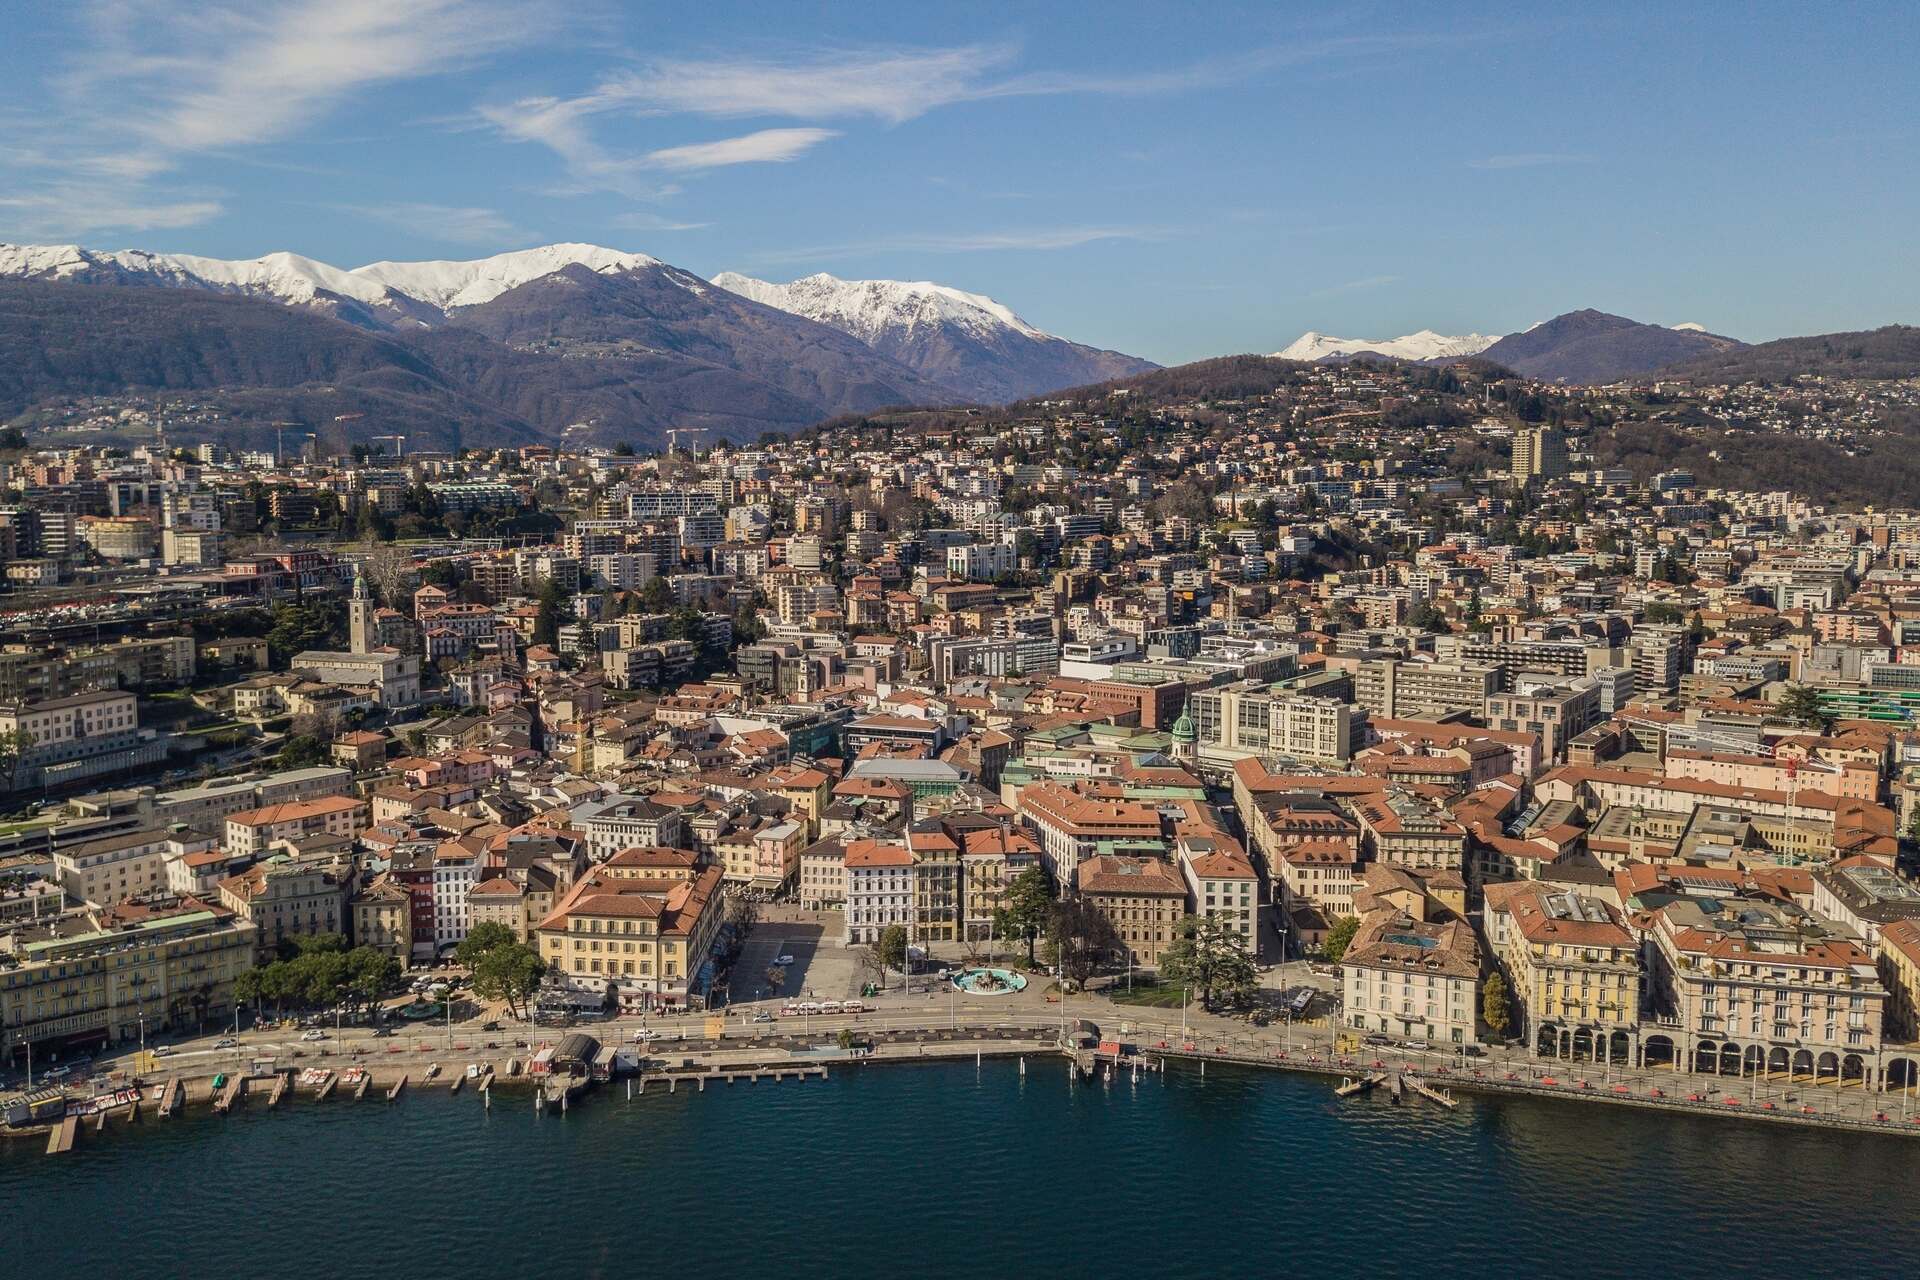 Ente Turistico del Luganese: una vista aerea del centro storico di Lugano dal lago Ceresio